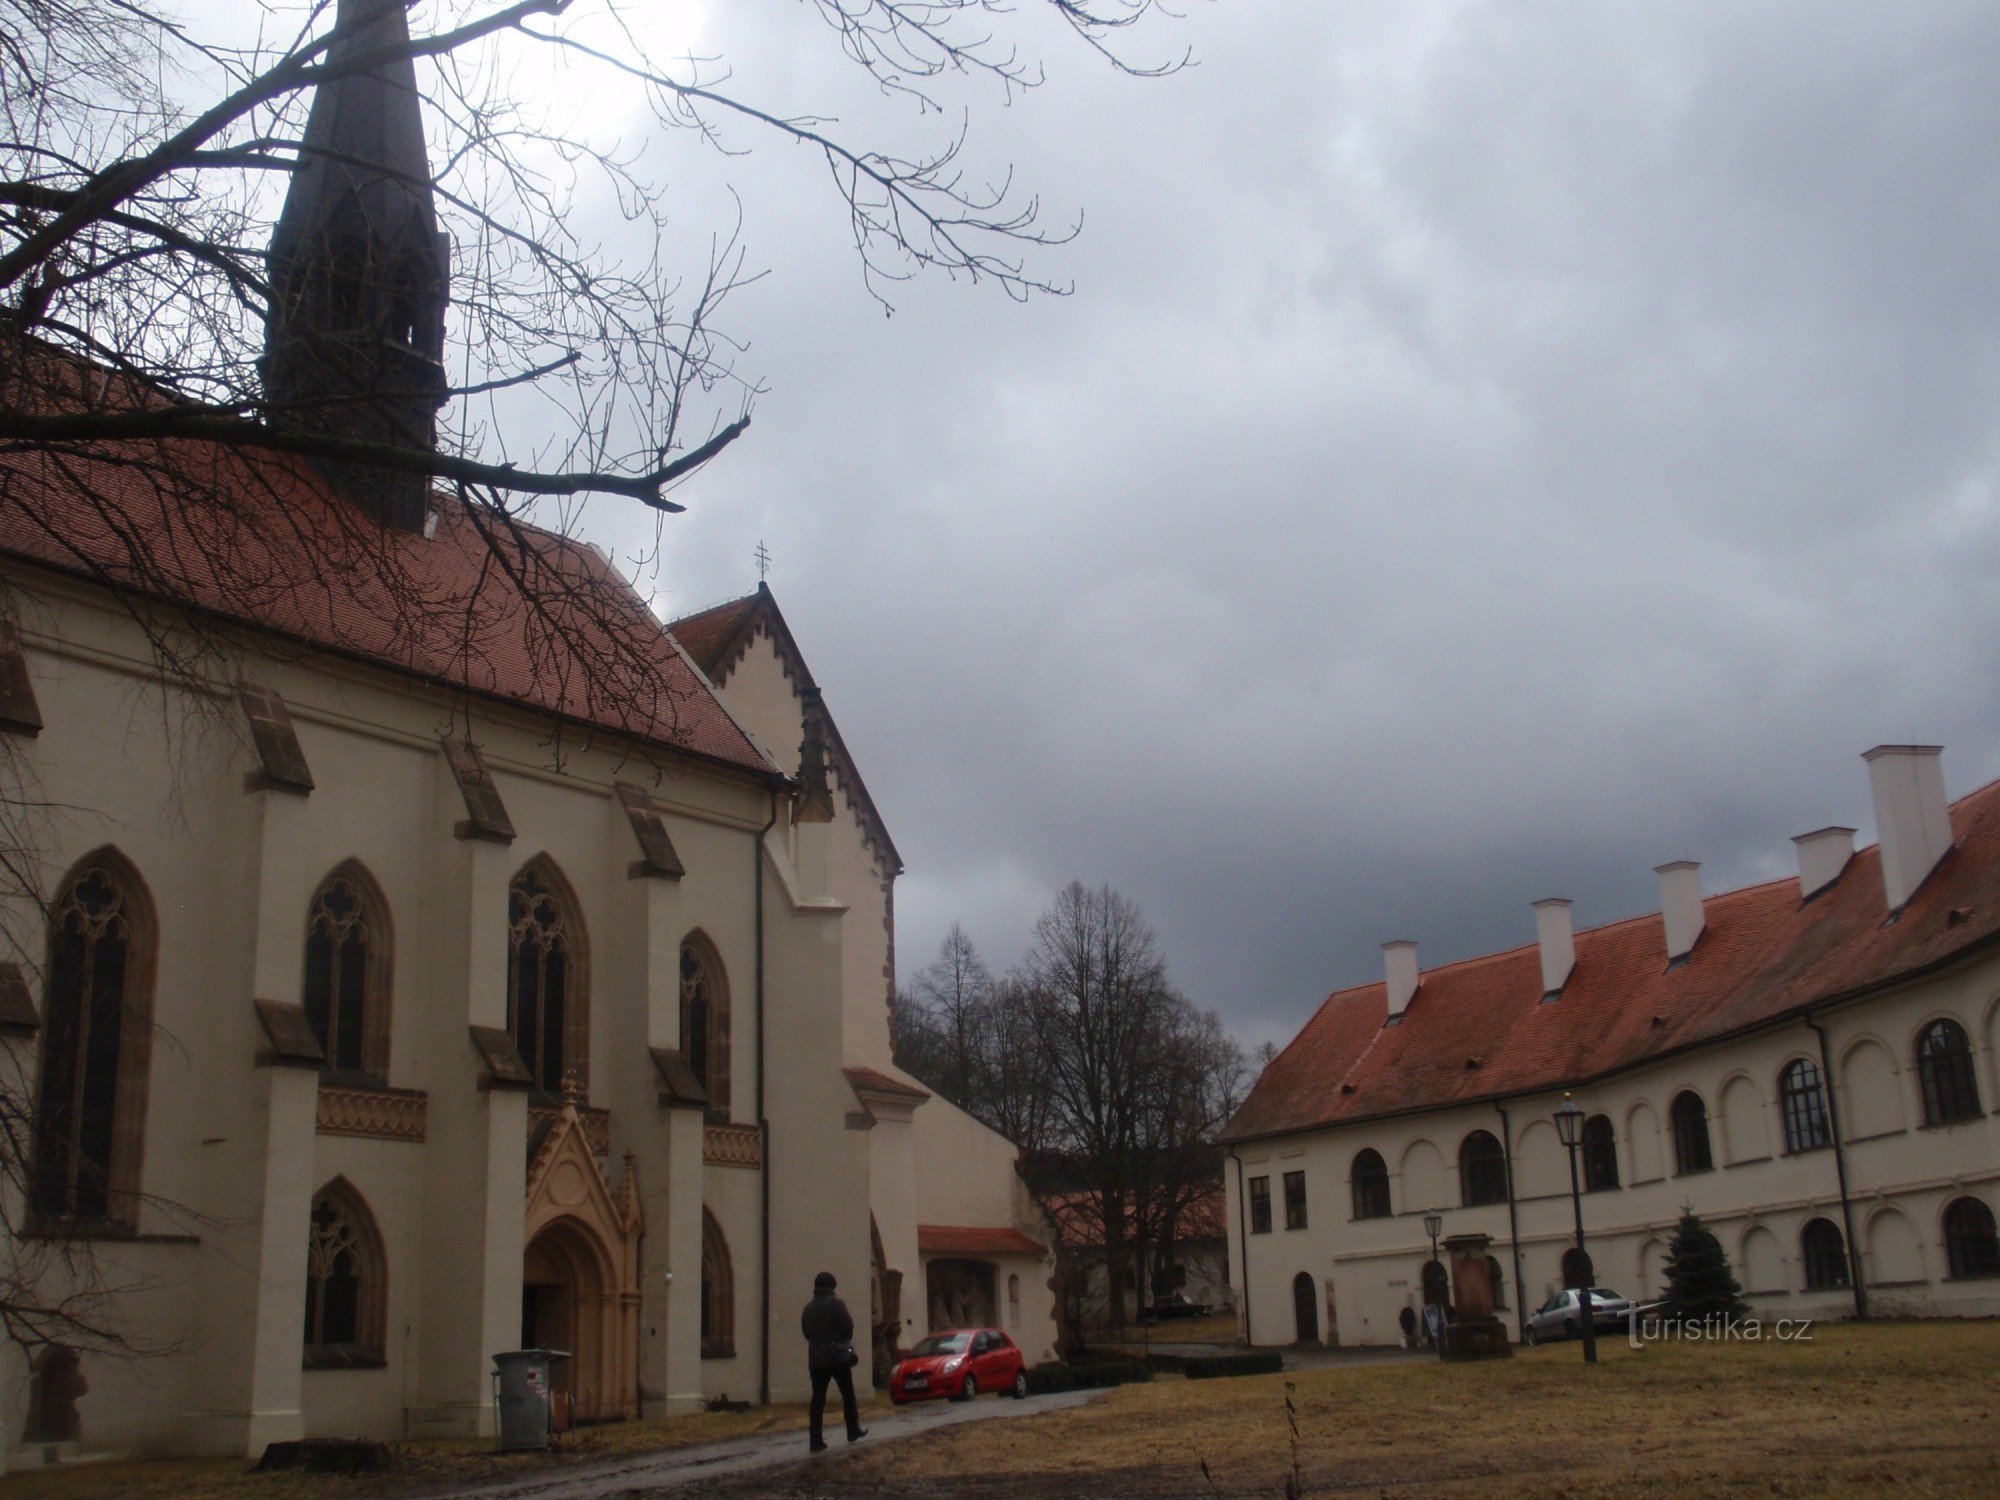 Muzeum Podhoráck w Předklášteří koło Tišnov